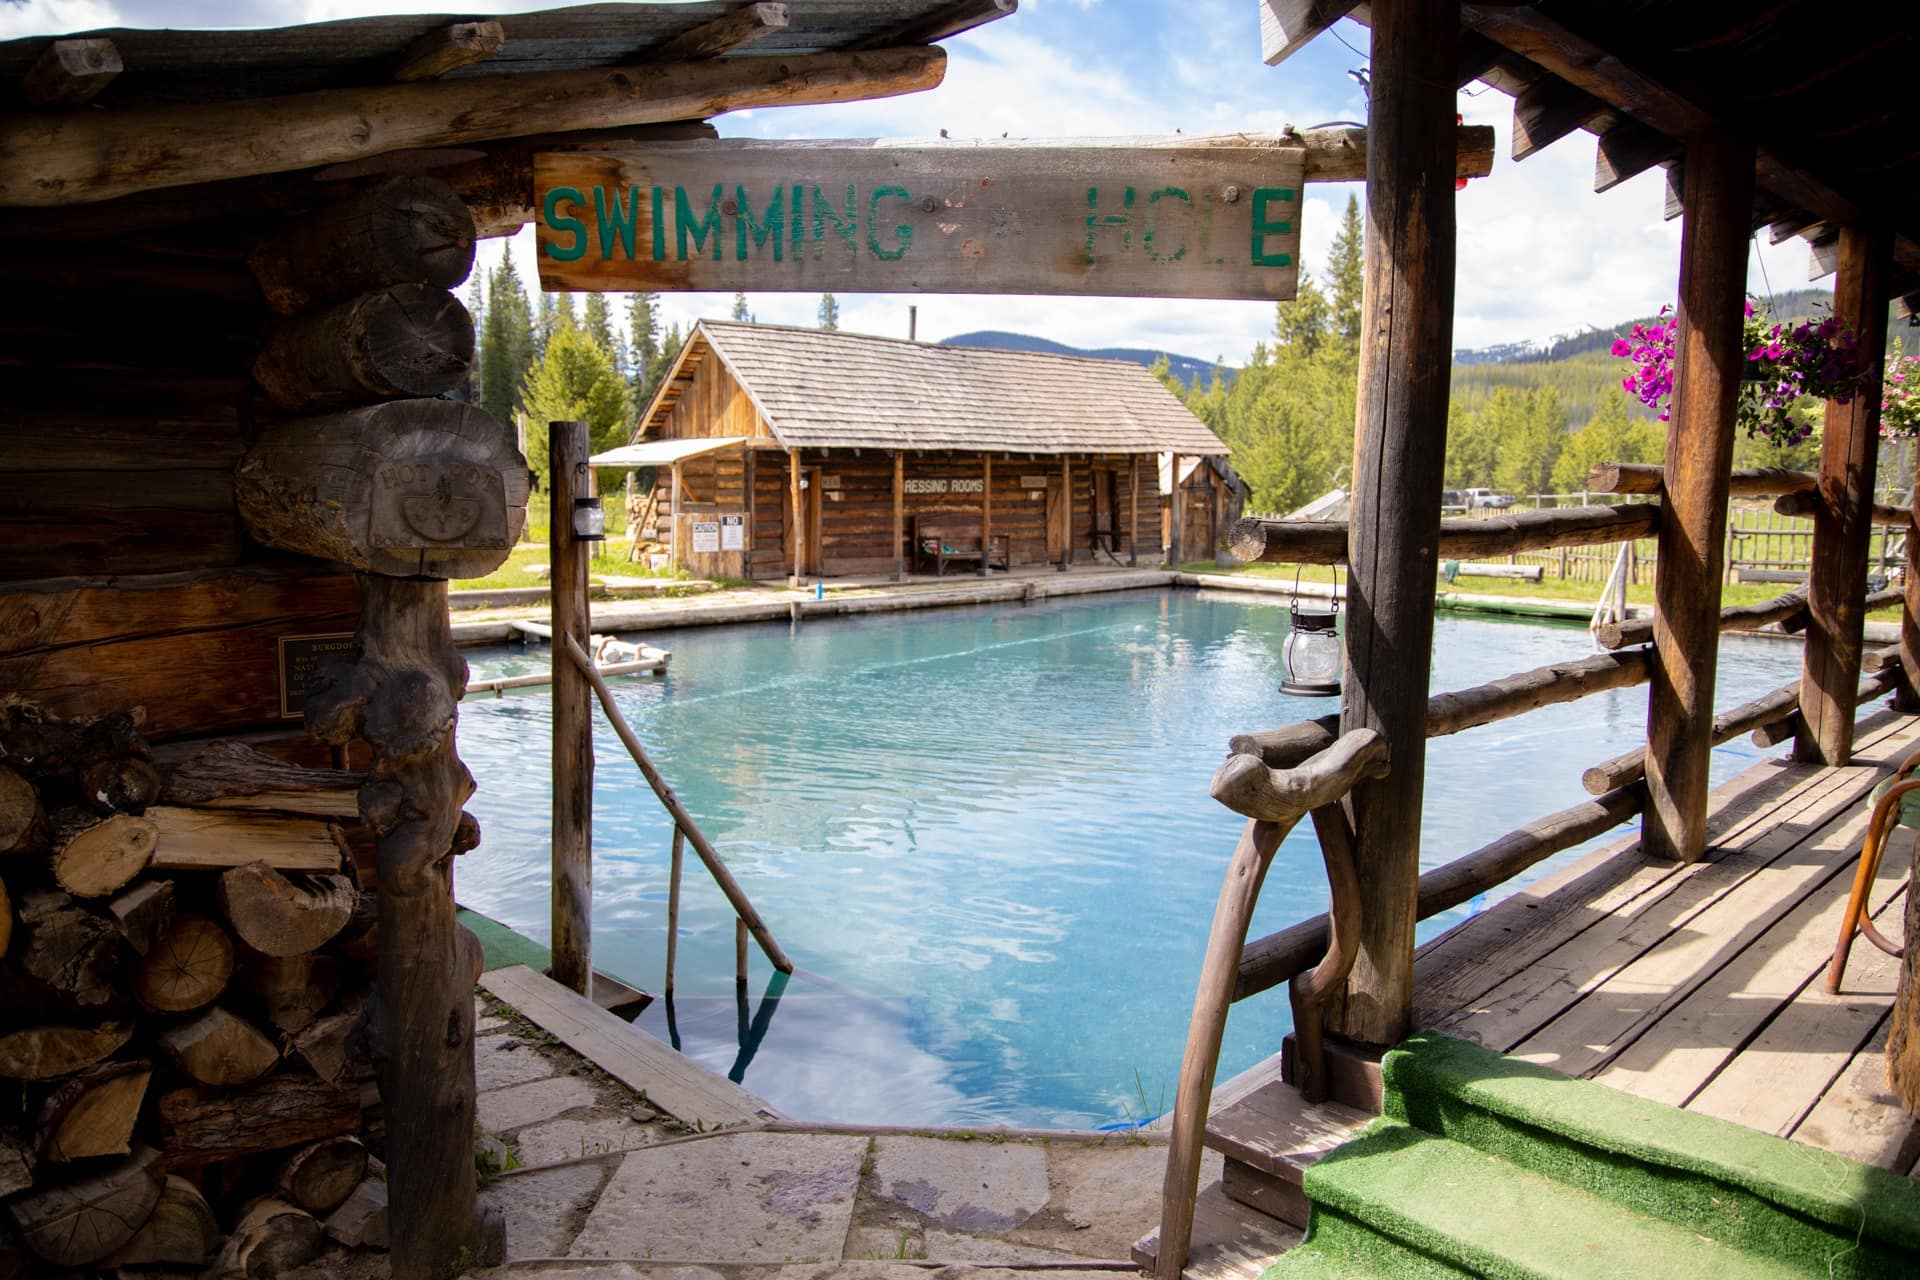 爱达荷州伯格道夫温泉度假村的一个大型温泉池。小木屋环绕着泳池，泳池入口悬挂着“游泳洞”的标志